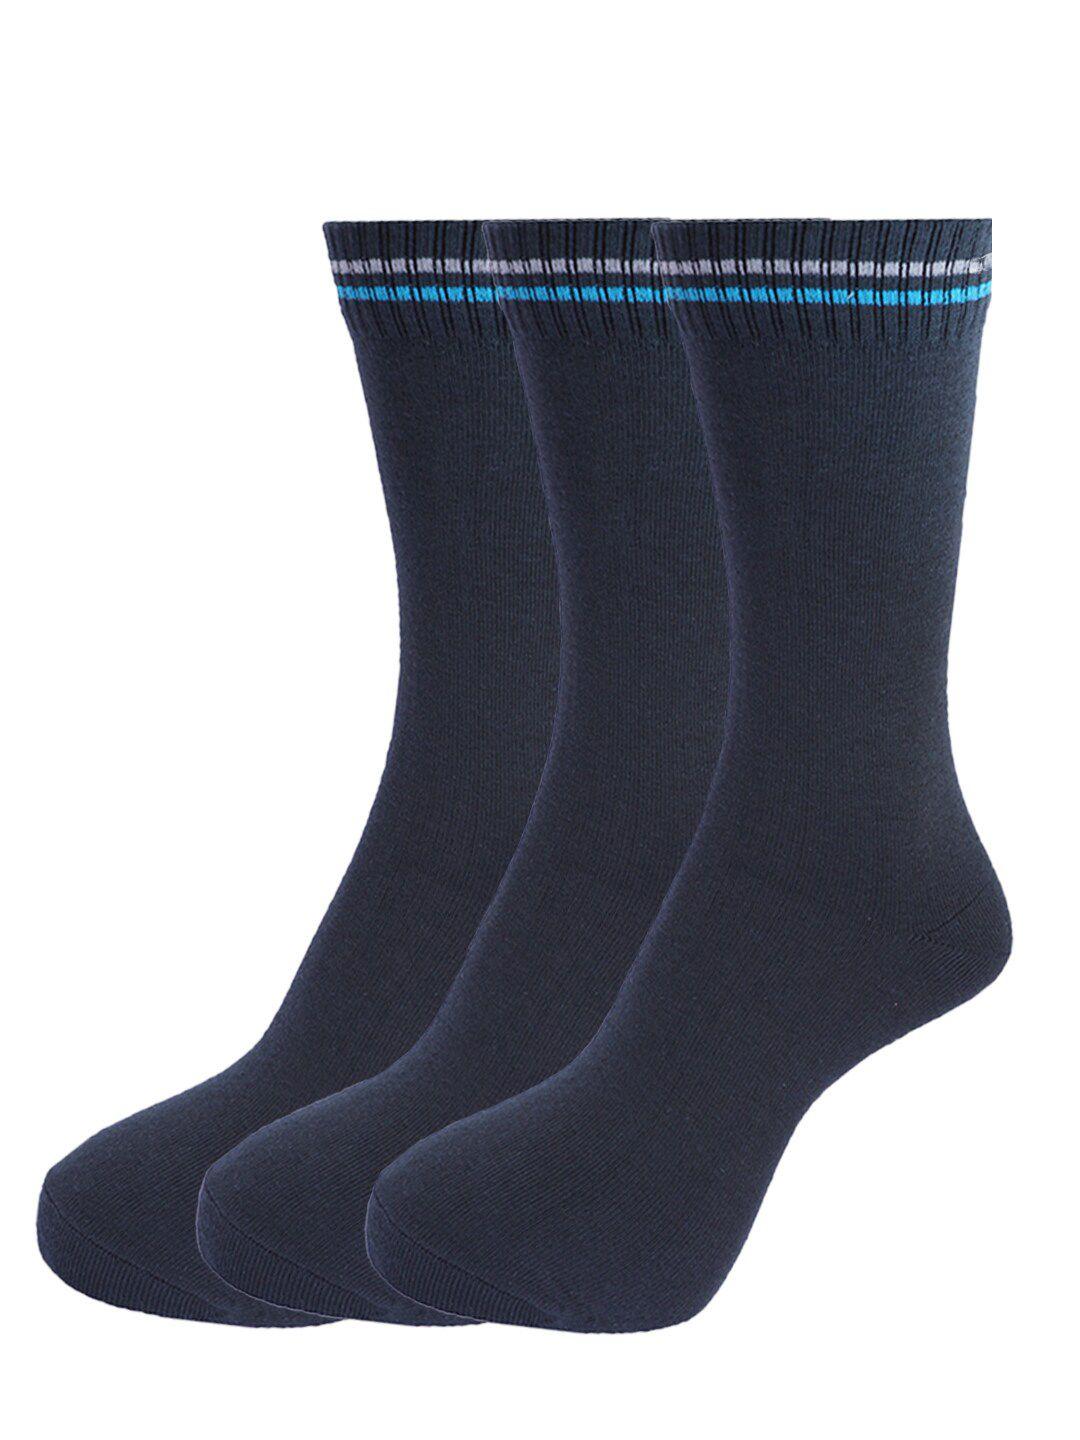 dollar socks men pack of 3 assorted cotton calf-length socks